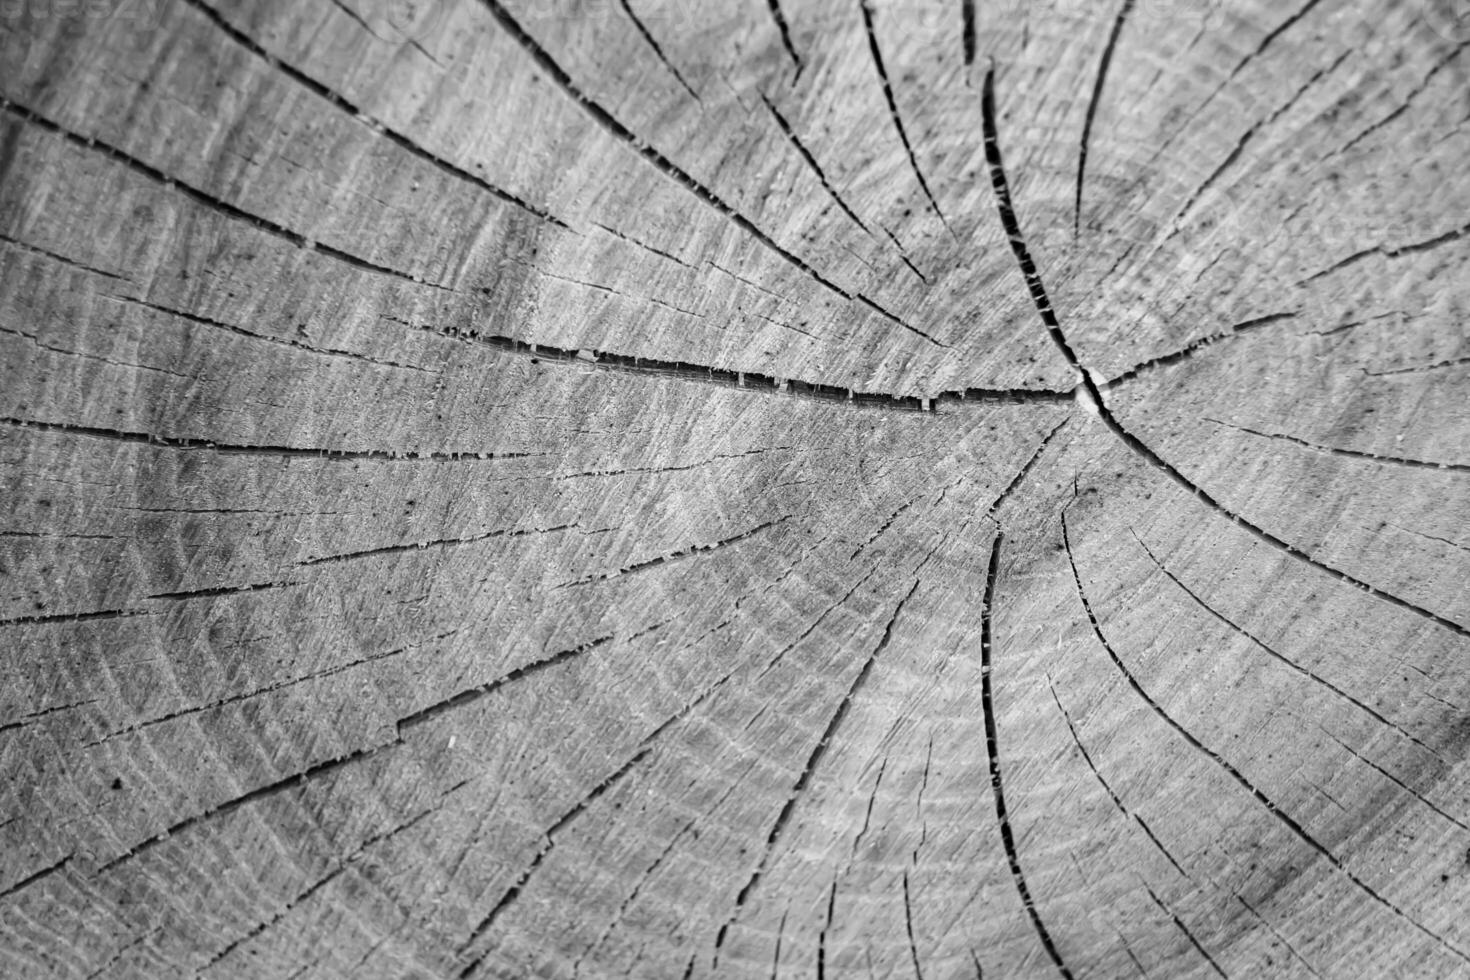 bella frattura di legno vecchia quercia, struttura naturale da vicino foto